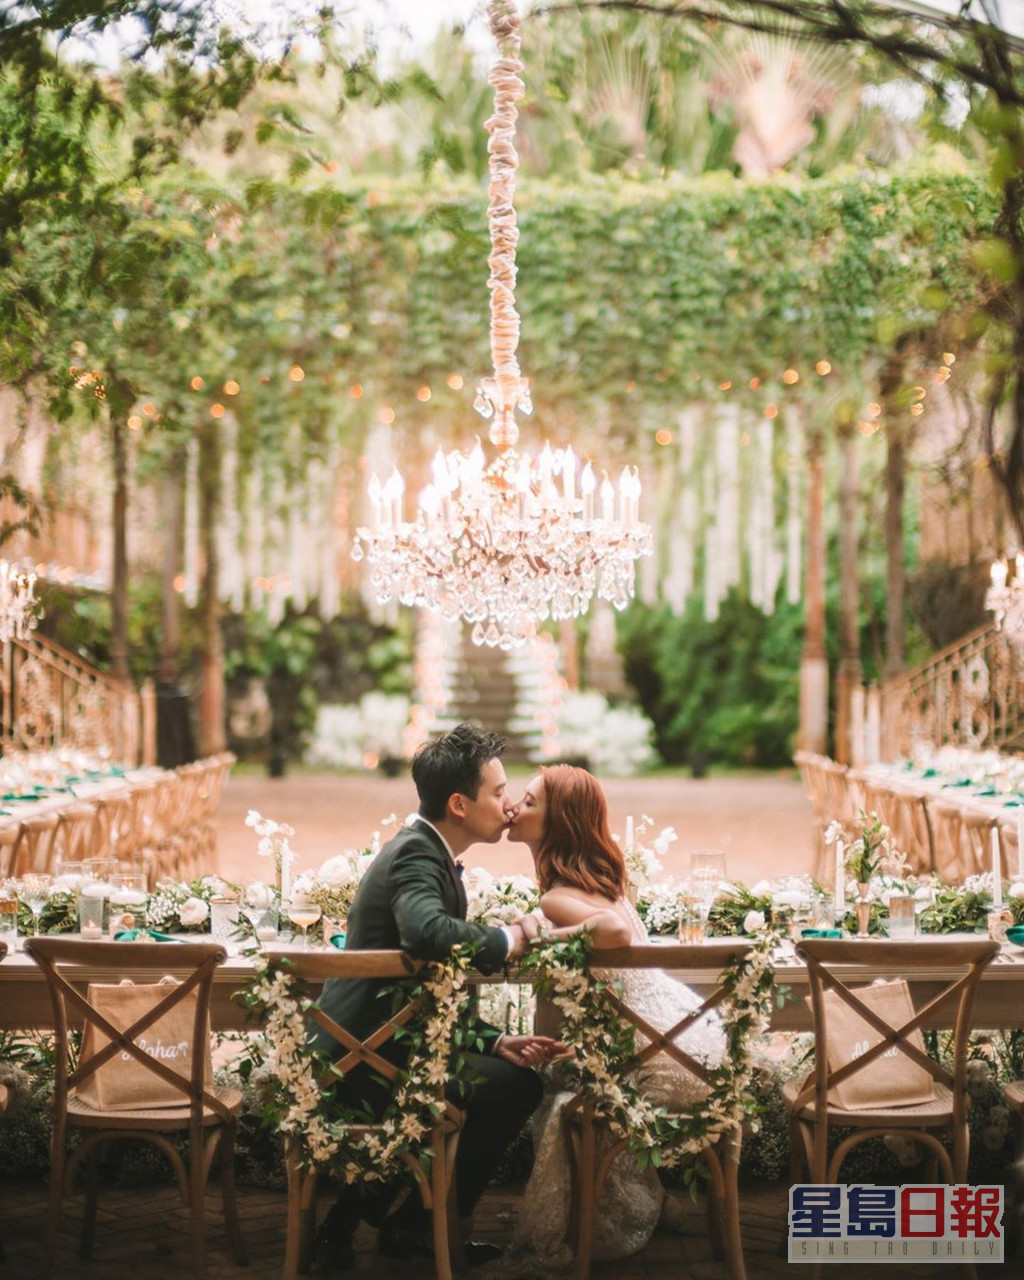 倪晨曦与金融才俊老公Vincent于2020年在夏威夷举行婚礼。